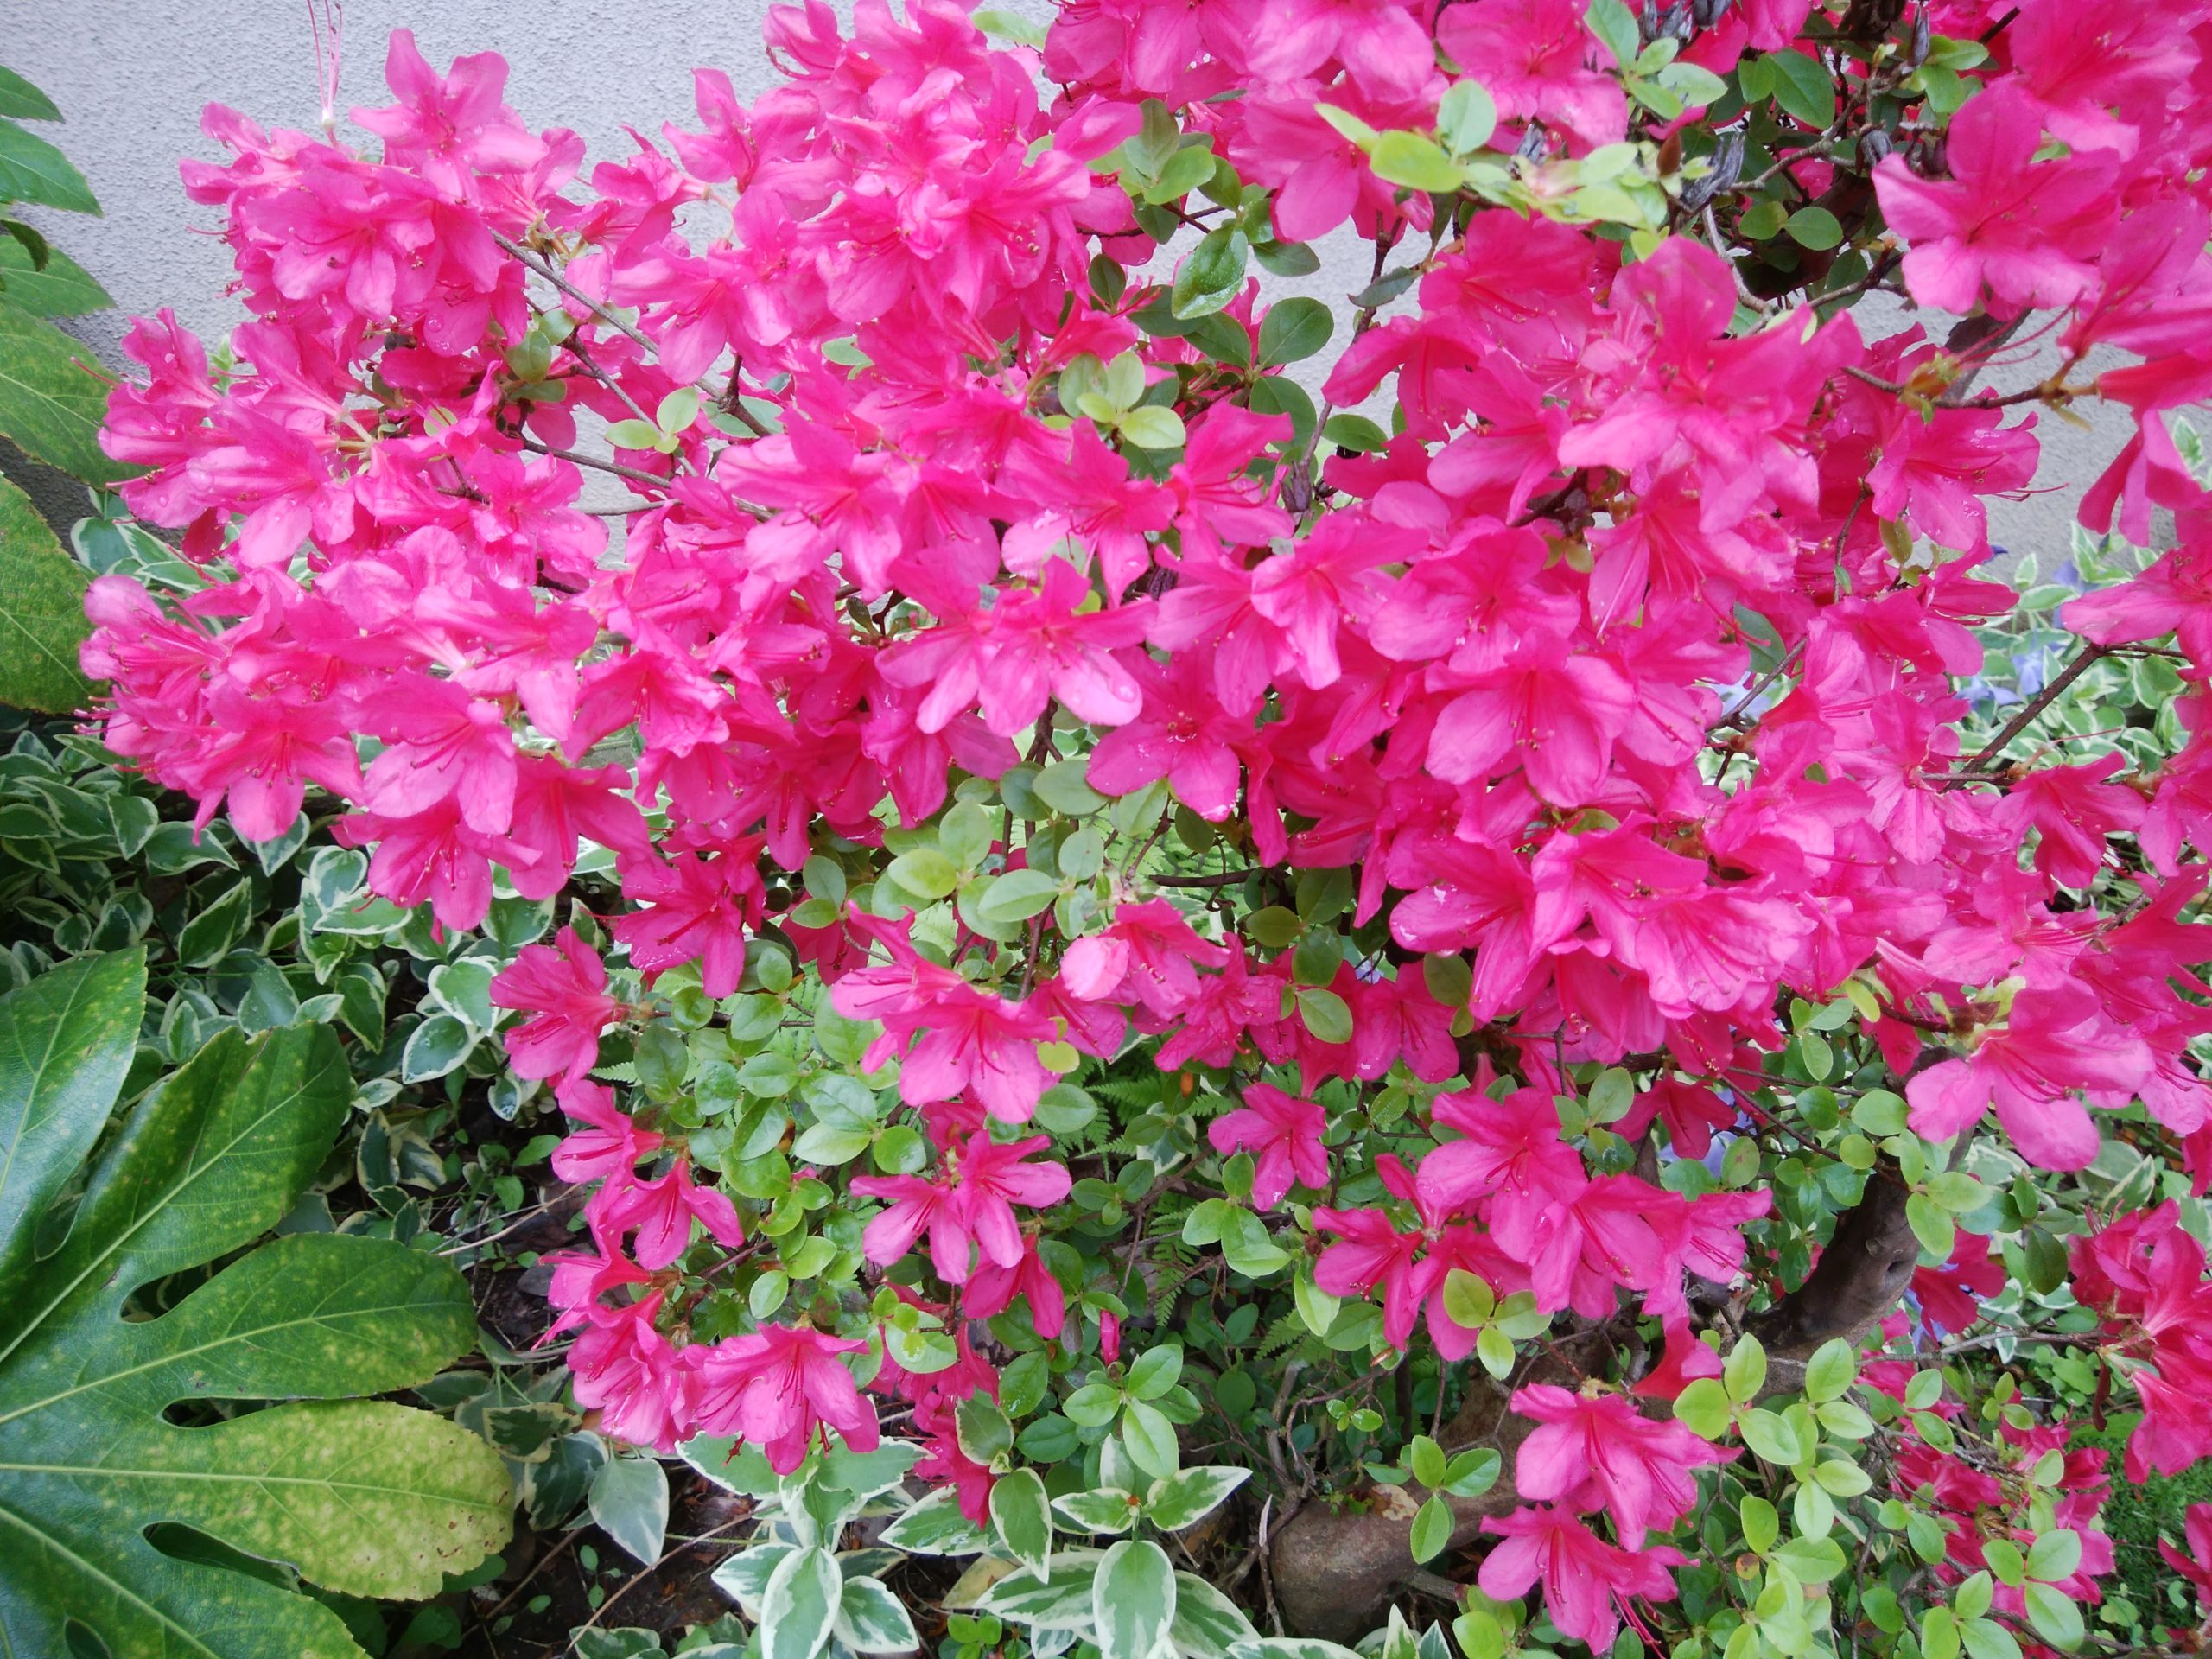 春から初夏にかけて咲く花,つつじazalea、サクラsakura、シャガshaga in early summer